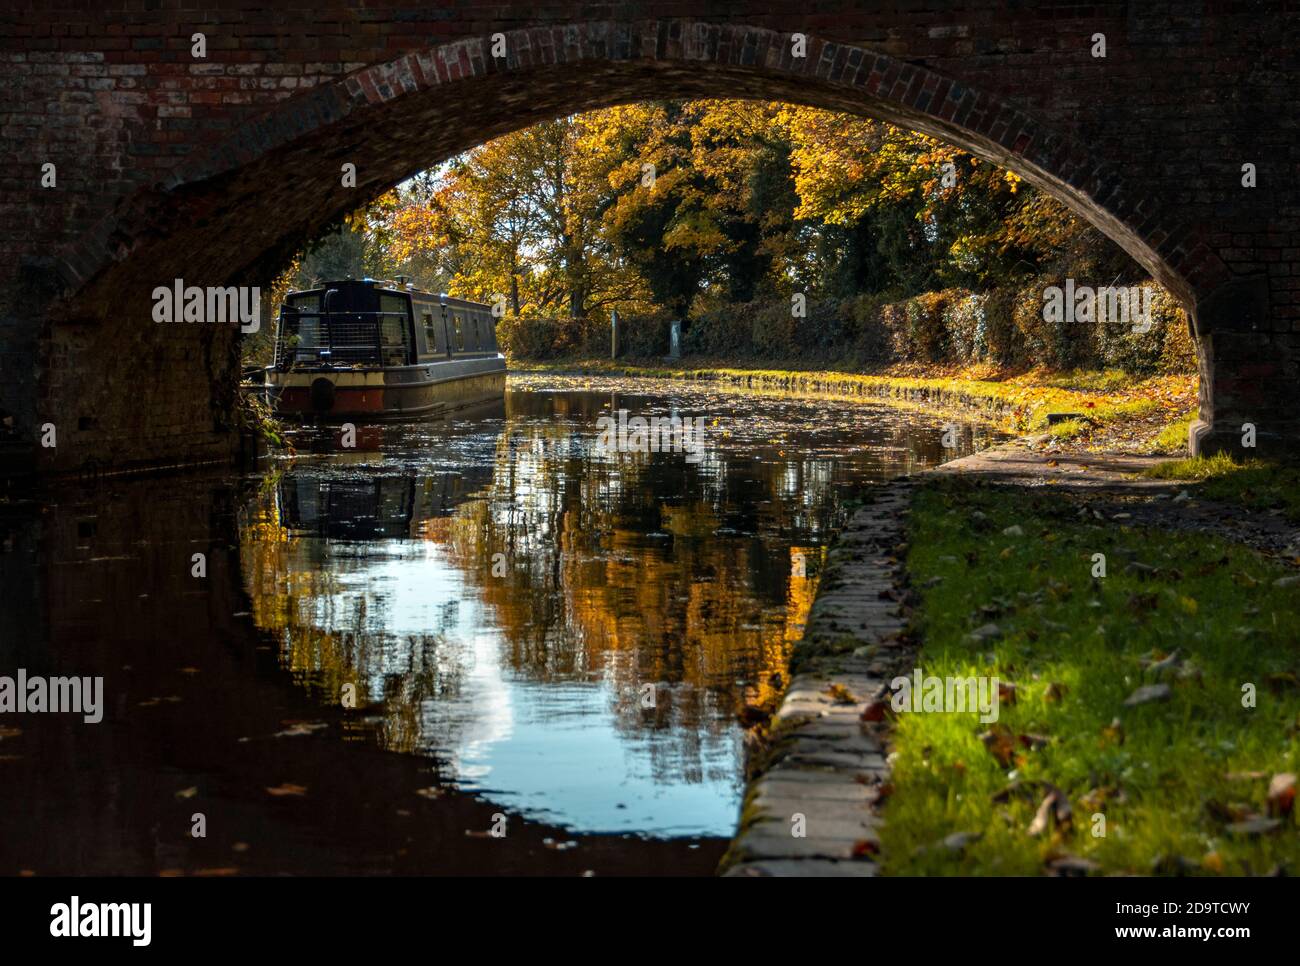 Ein Blick auf ein enges Boot unter dem Bogen einer gemauerten Fußbrücke, die sich in das stille Wasser des Kanals spiegelte, mit herbstlichen Farben in den Bäumen Stockfoto